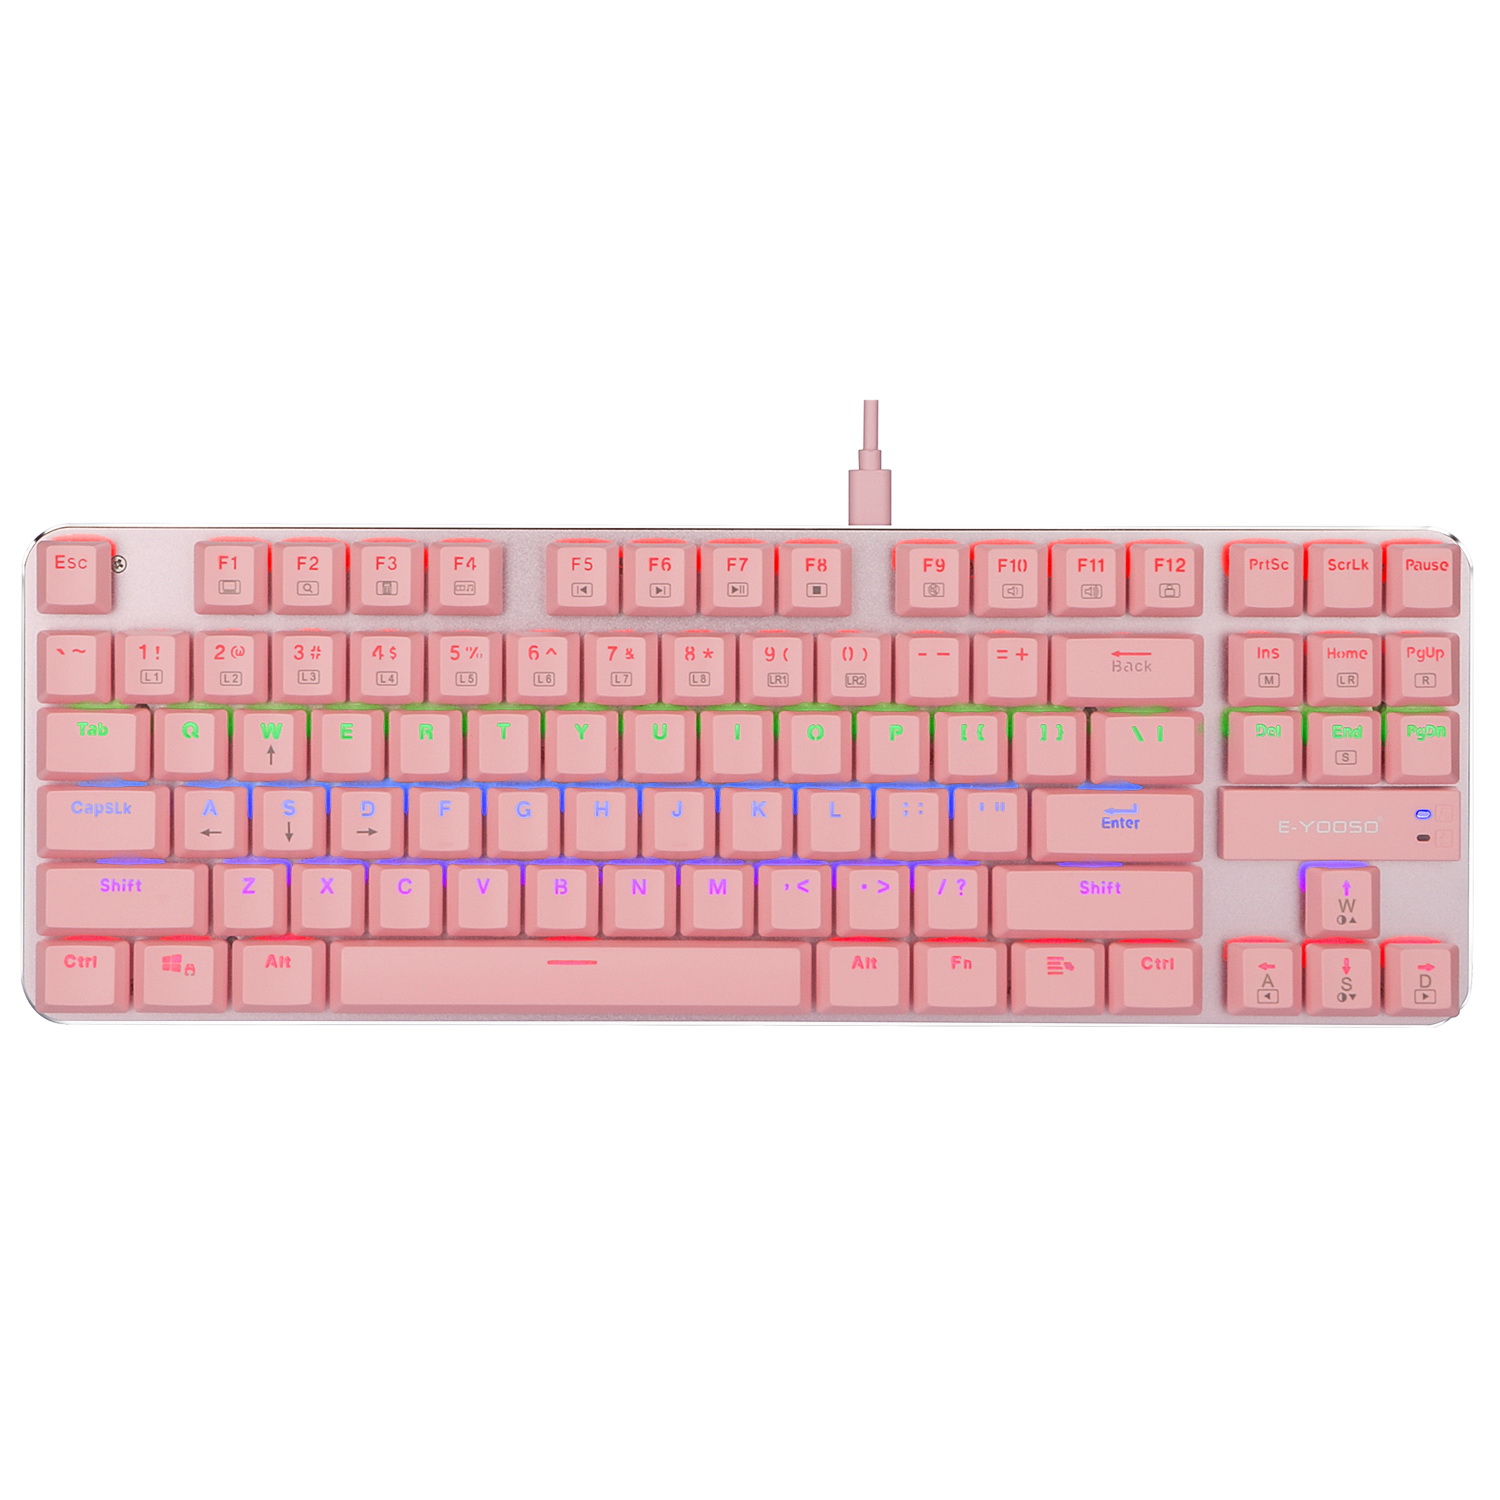 Z-66 87key RGB Mechanical Gaming Keyboard Pink-Brown Switch